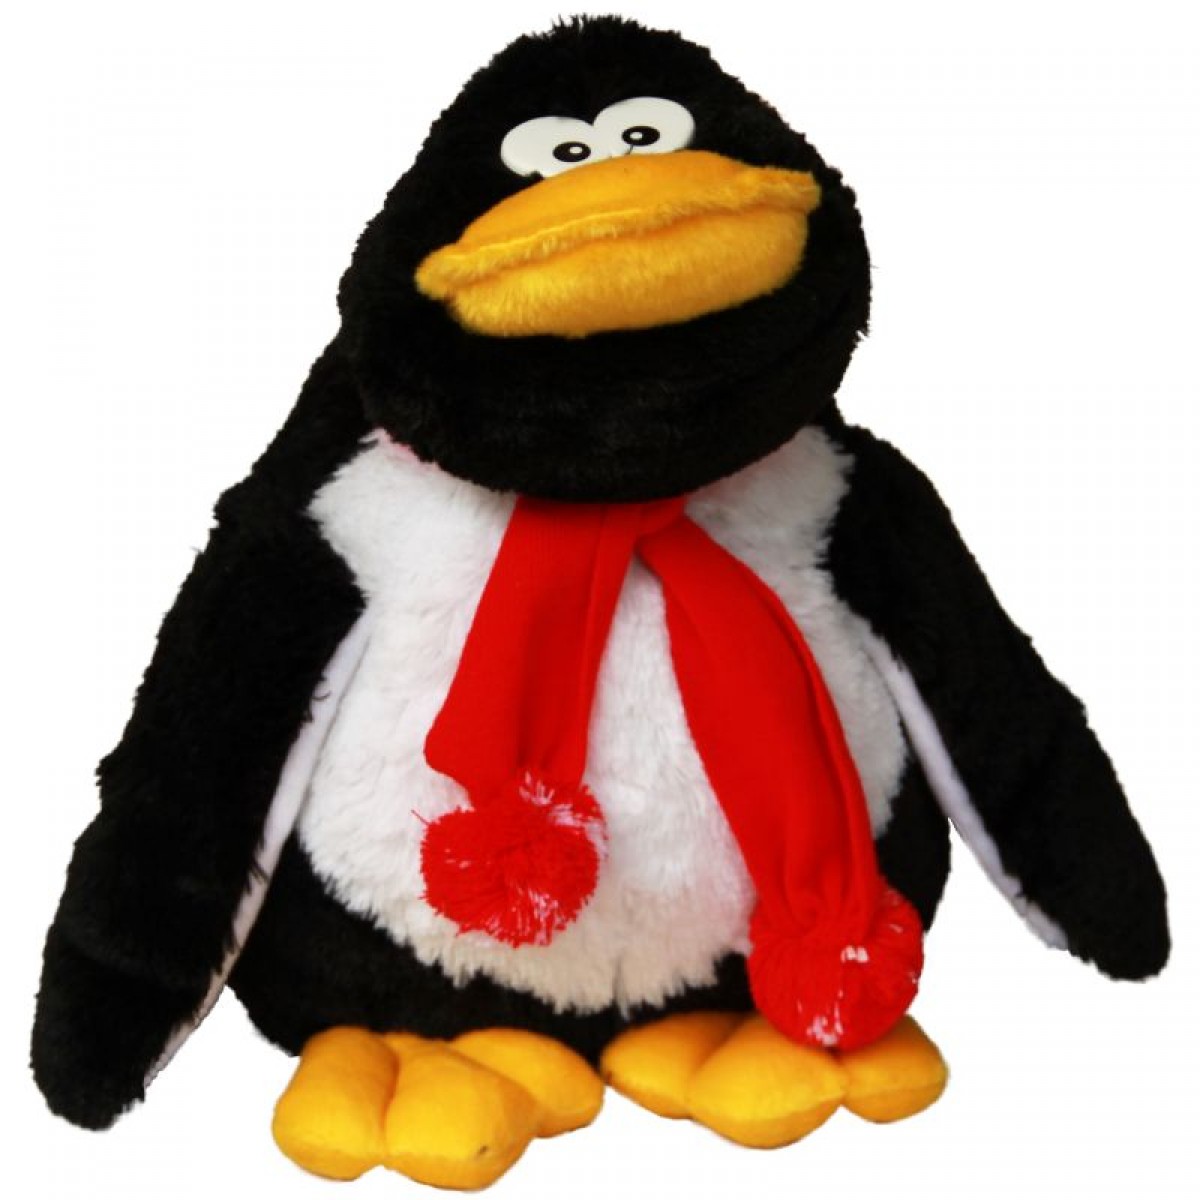 Мягкие игрушки шлепа купить. Лала Фанфан Пингвин. Игрушка-Пингвин. Плюшевый Пингвин. Пингвин игрушка для детей.